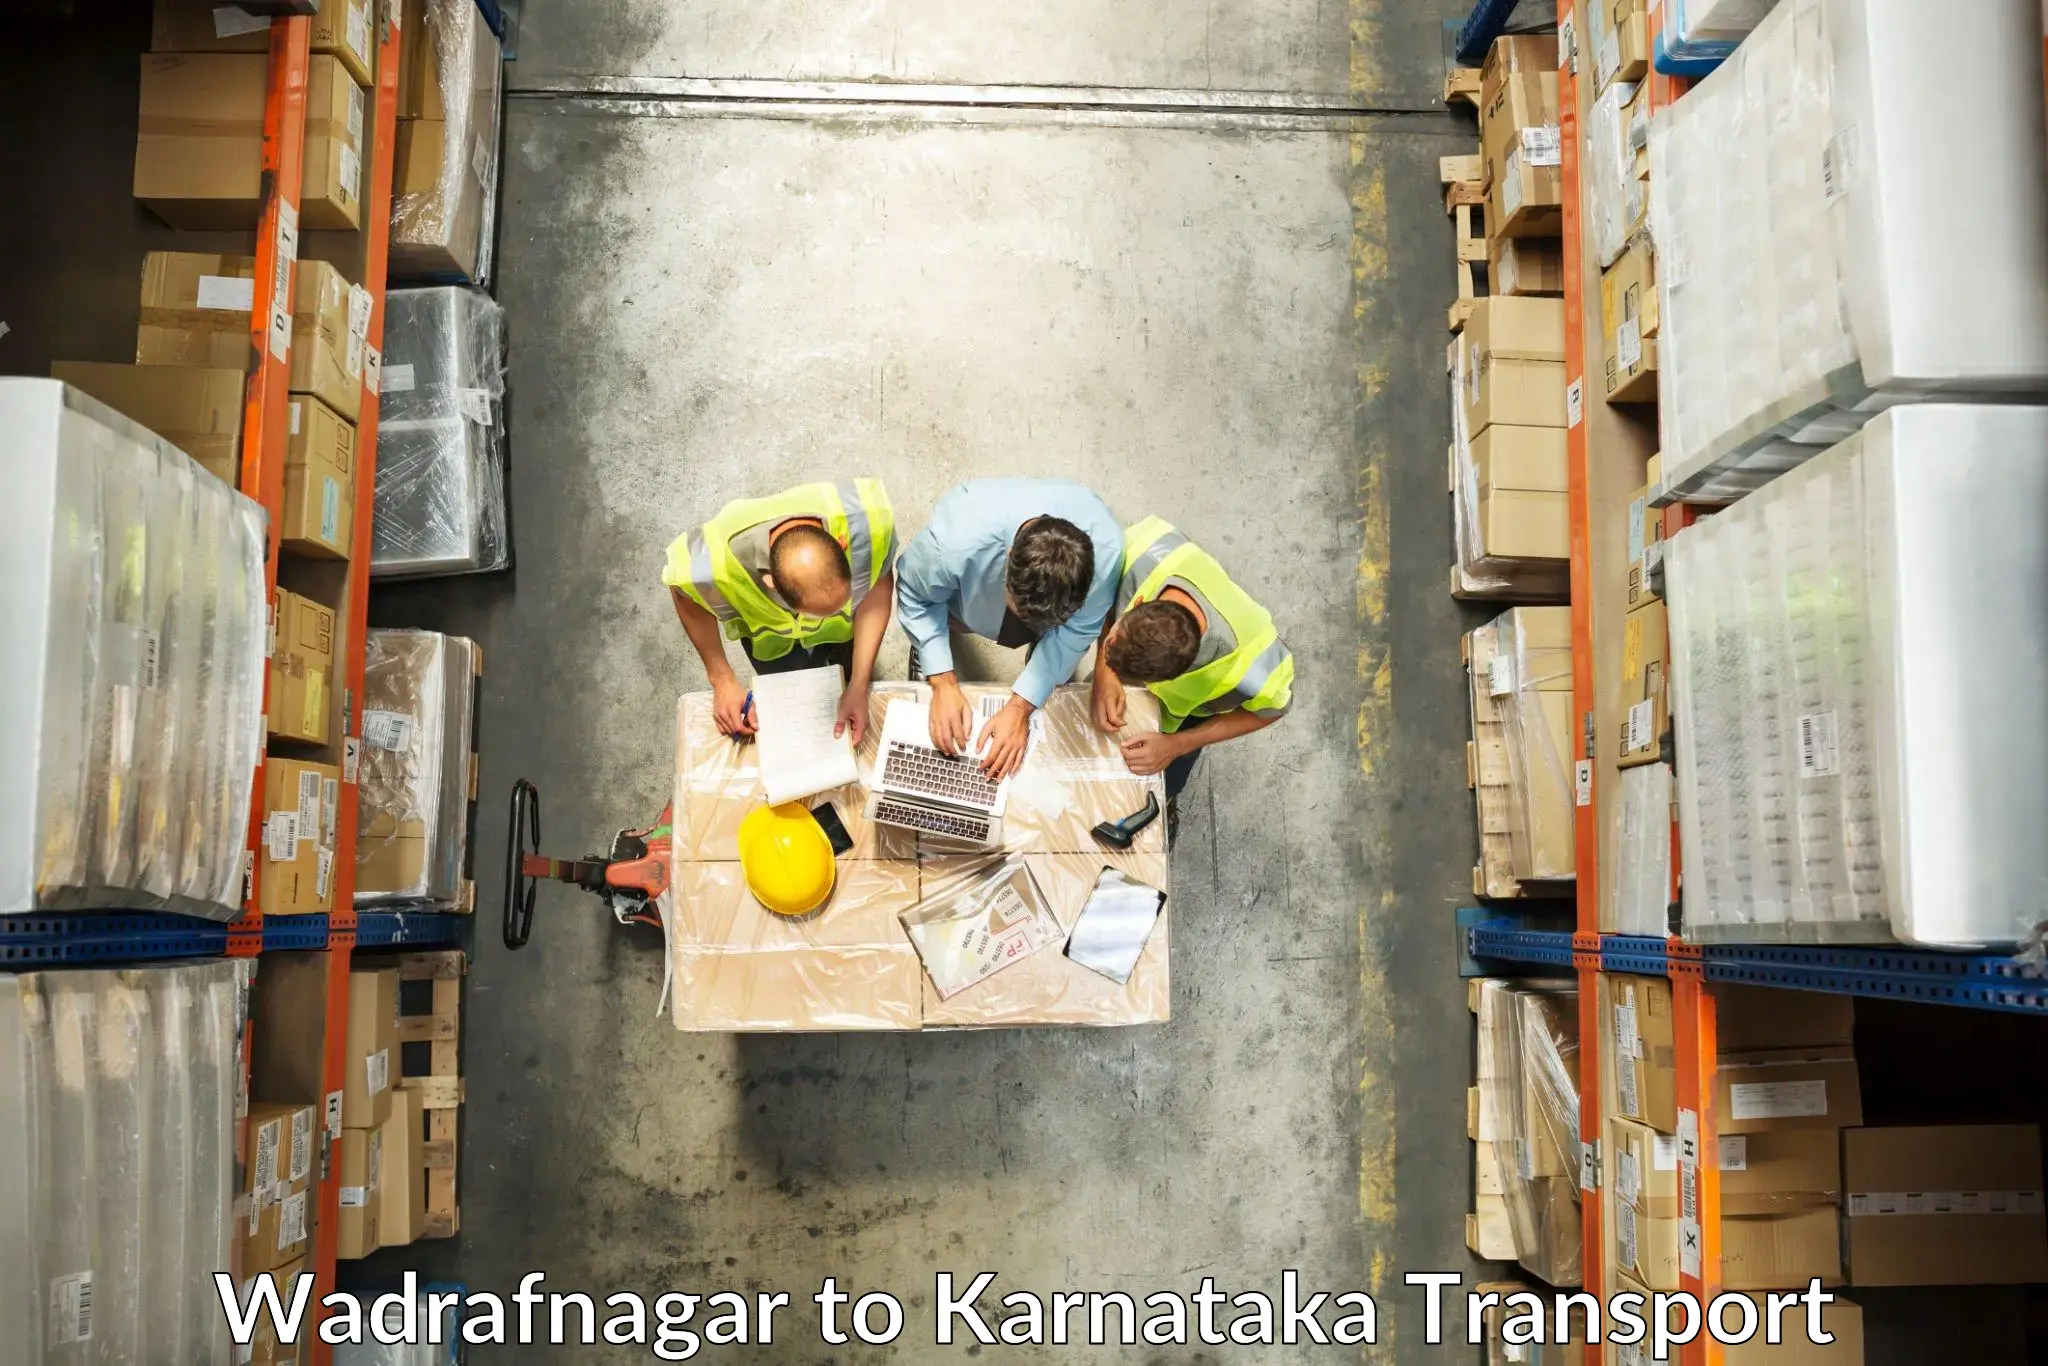 Container transport service Wadrafnagar to Pavagada